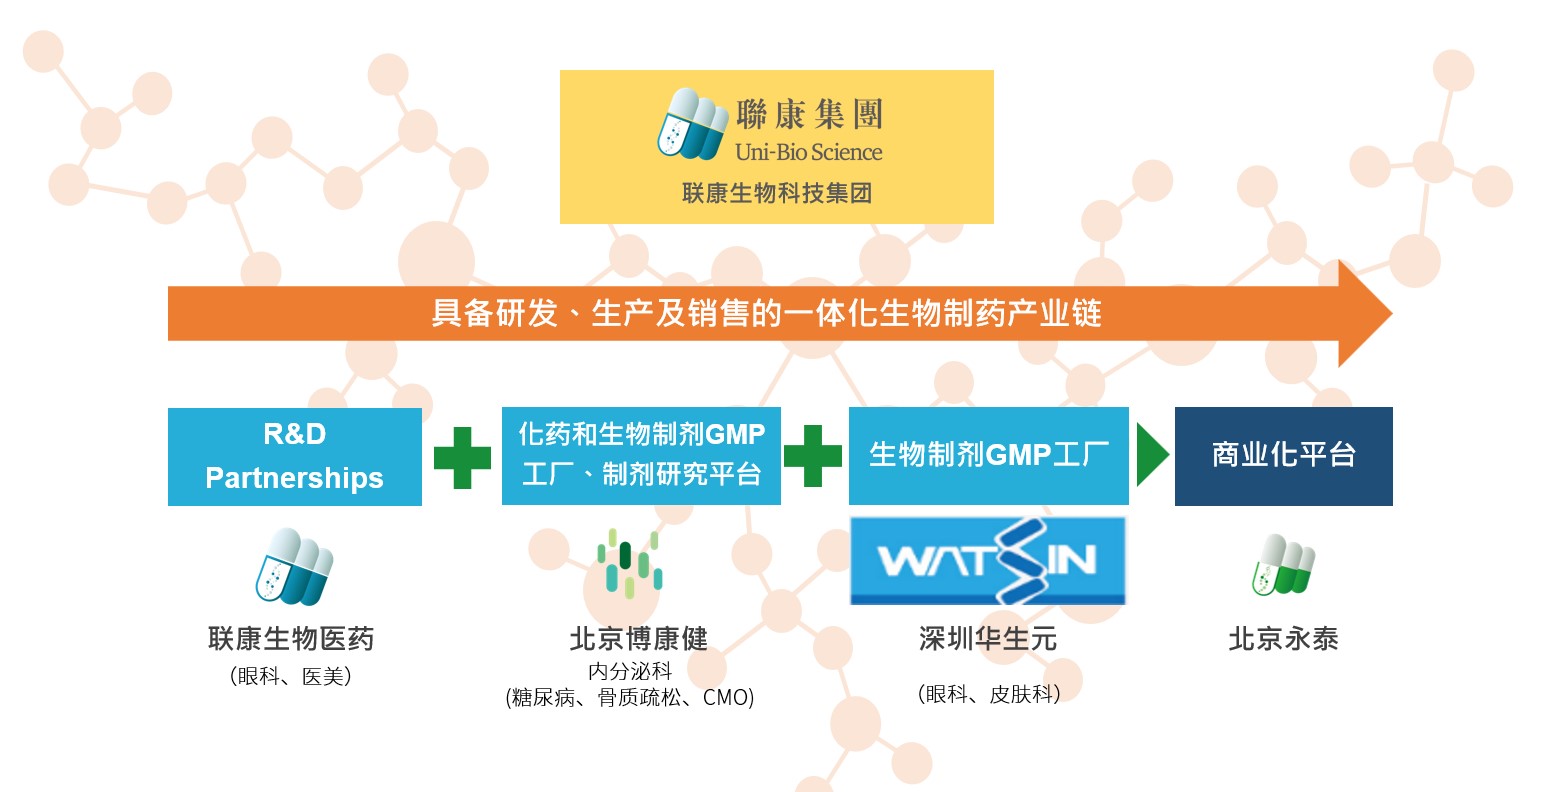 申博sunbet生物科技集团组织架构